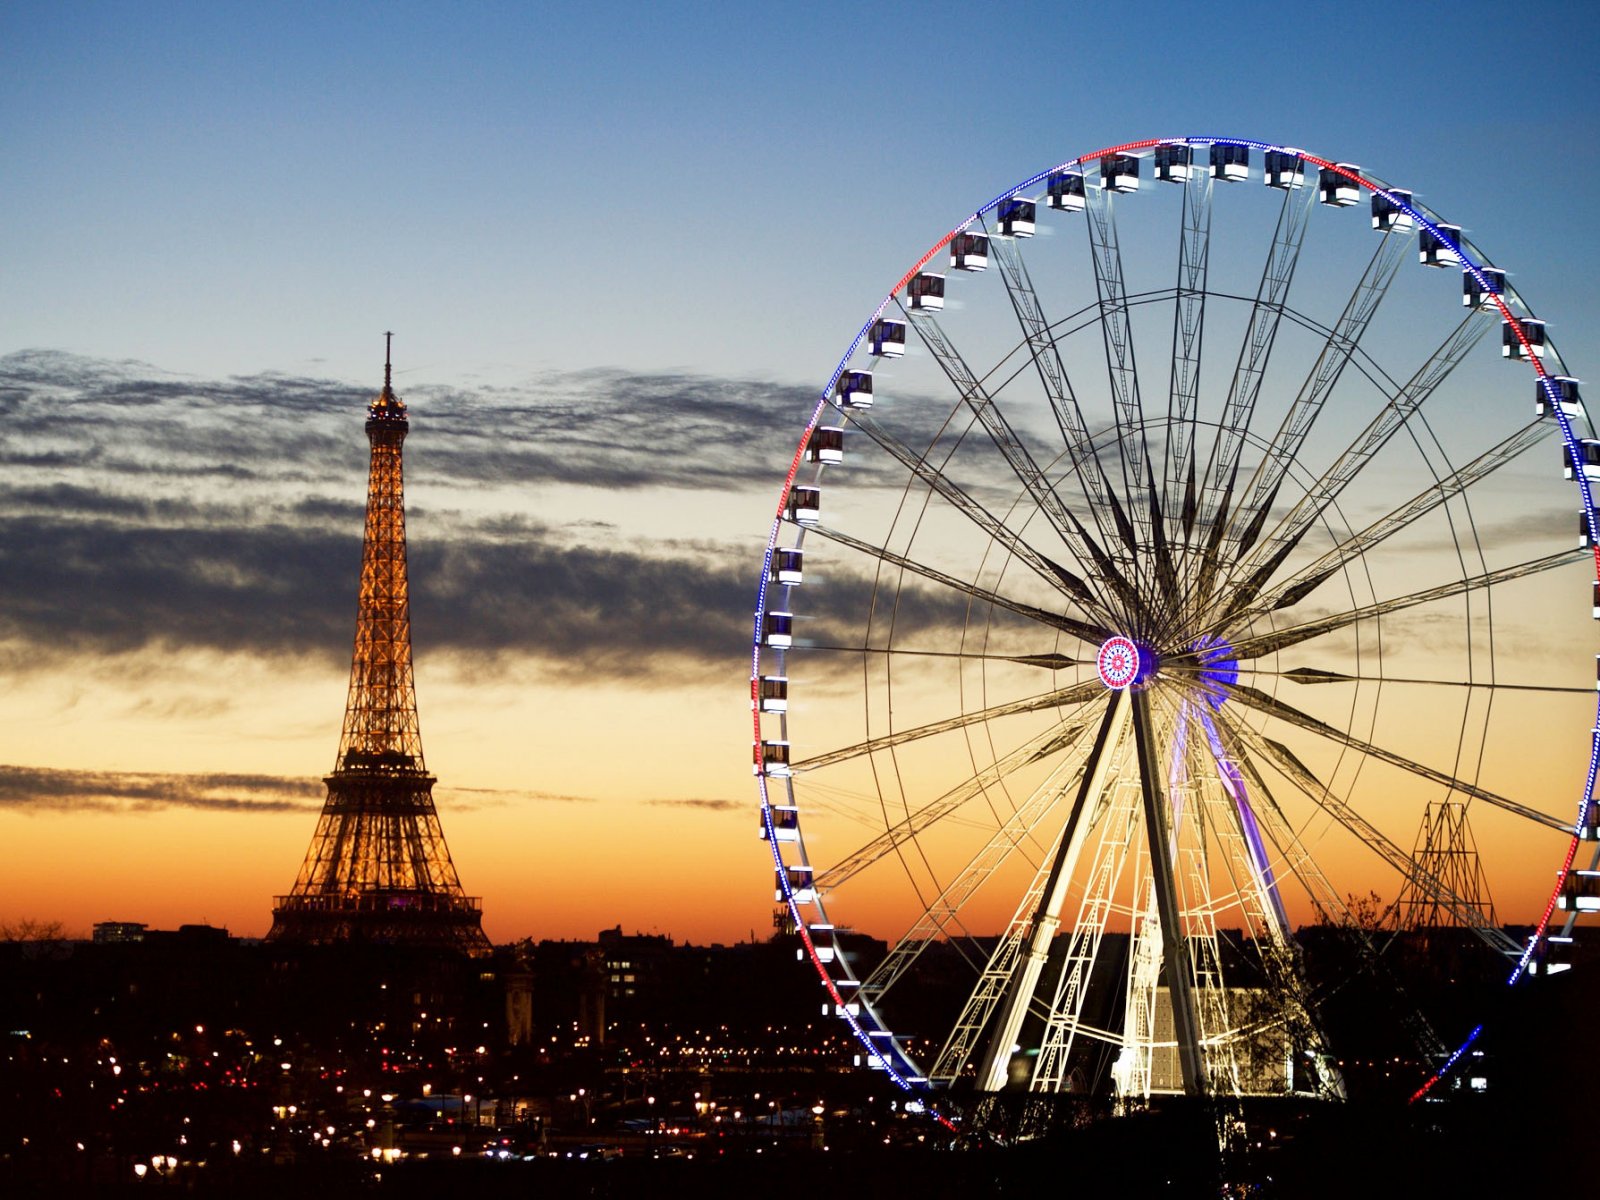 The Ferris wheel, Paris